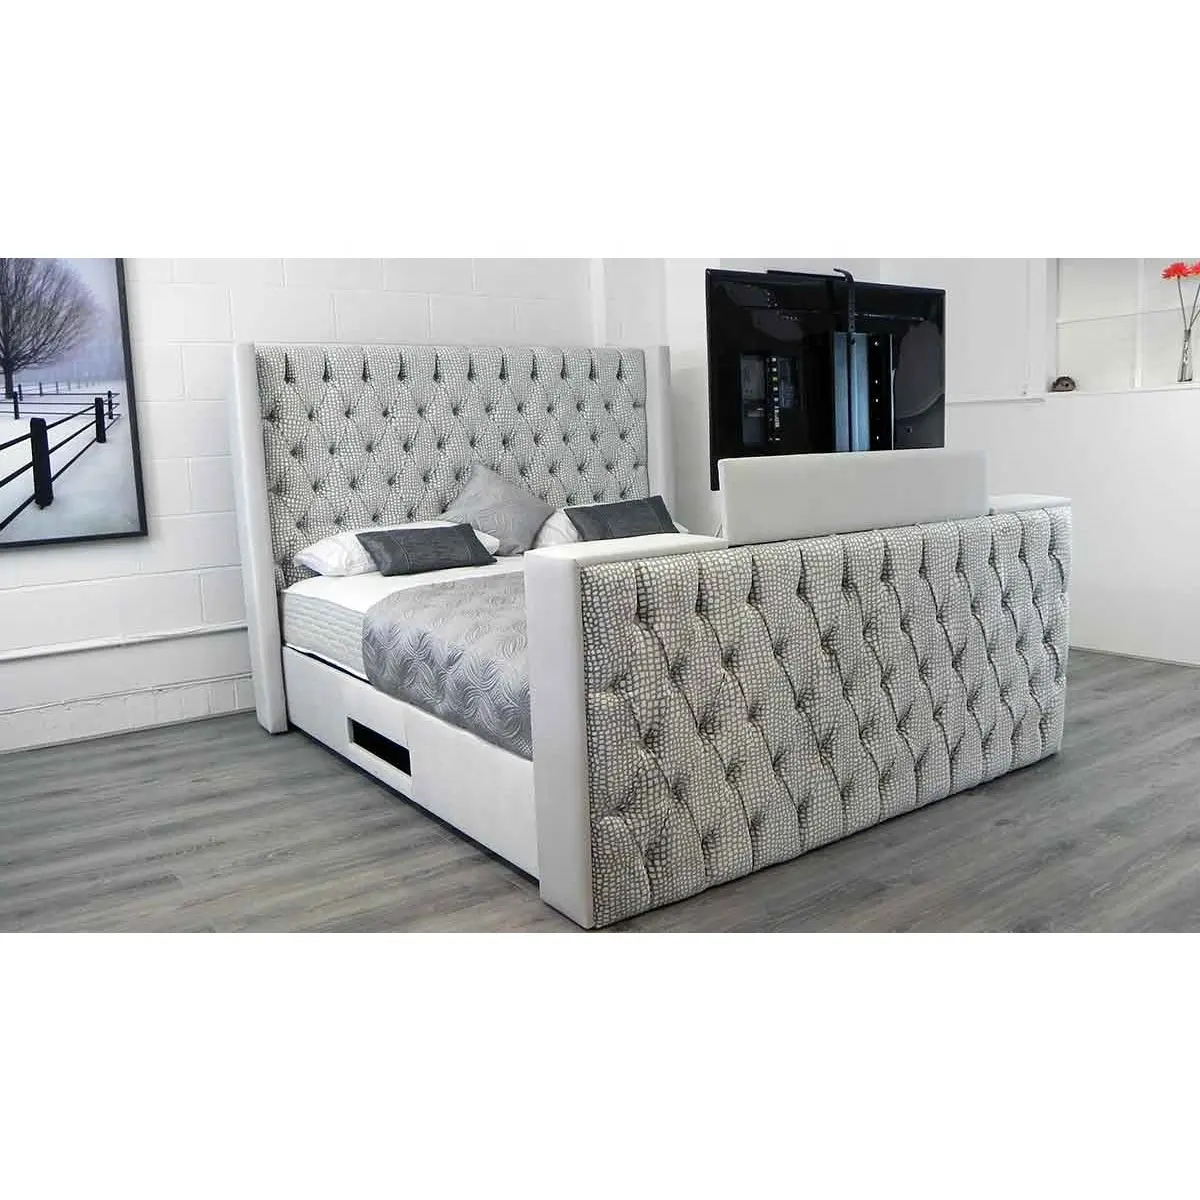 Pz Home Afstandsbediening Hele Huis Decoratie King Size Smart Luxe Bed Met Tv En Open Haard In Voetplank Opslag